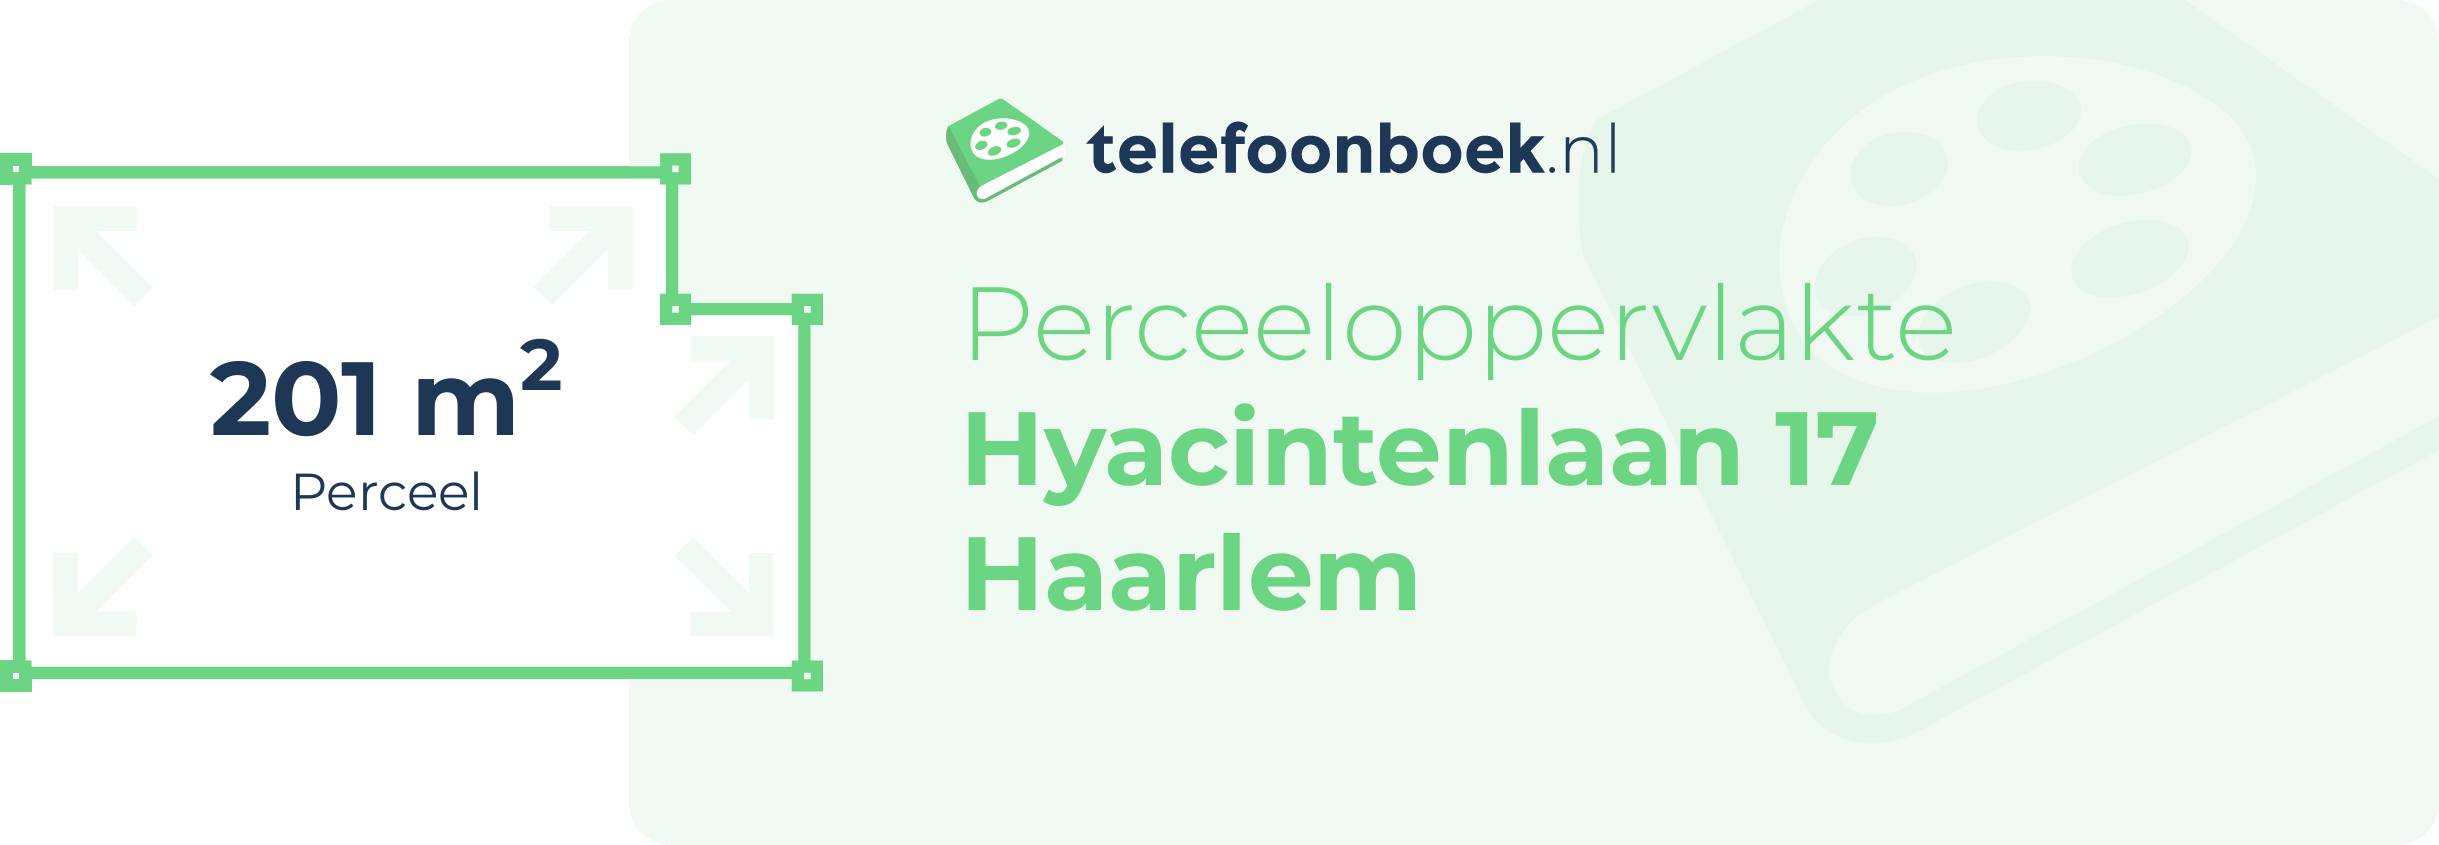 Perceeloppervlakte Hyacintenlaan 17 Haarlem